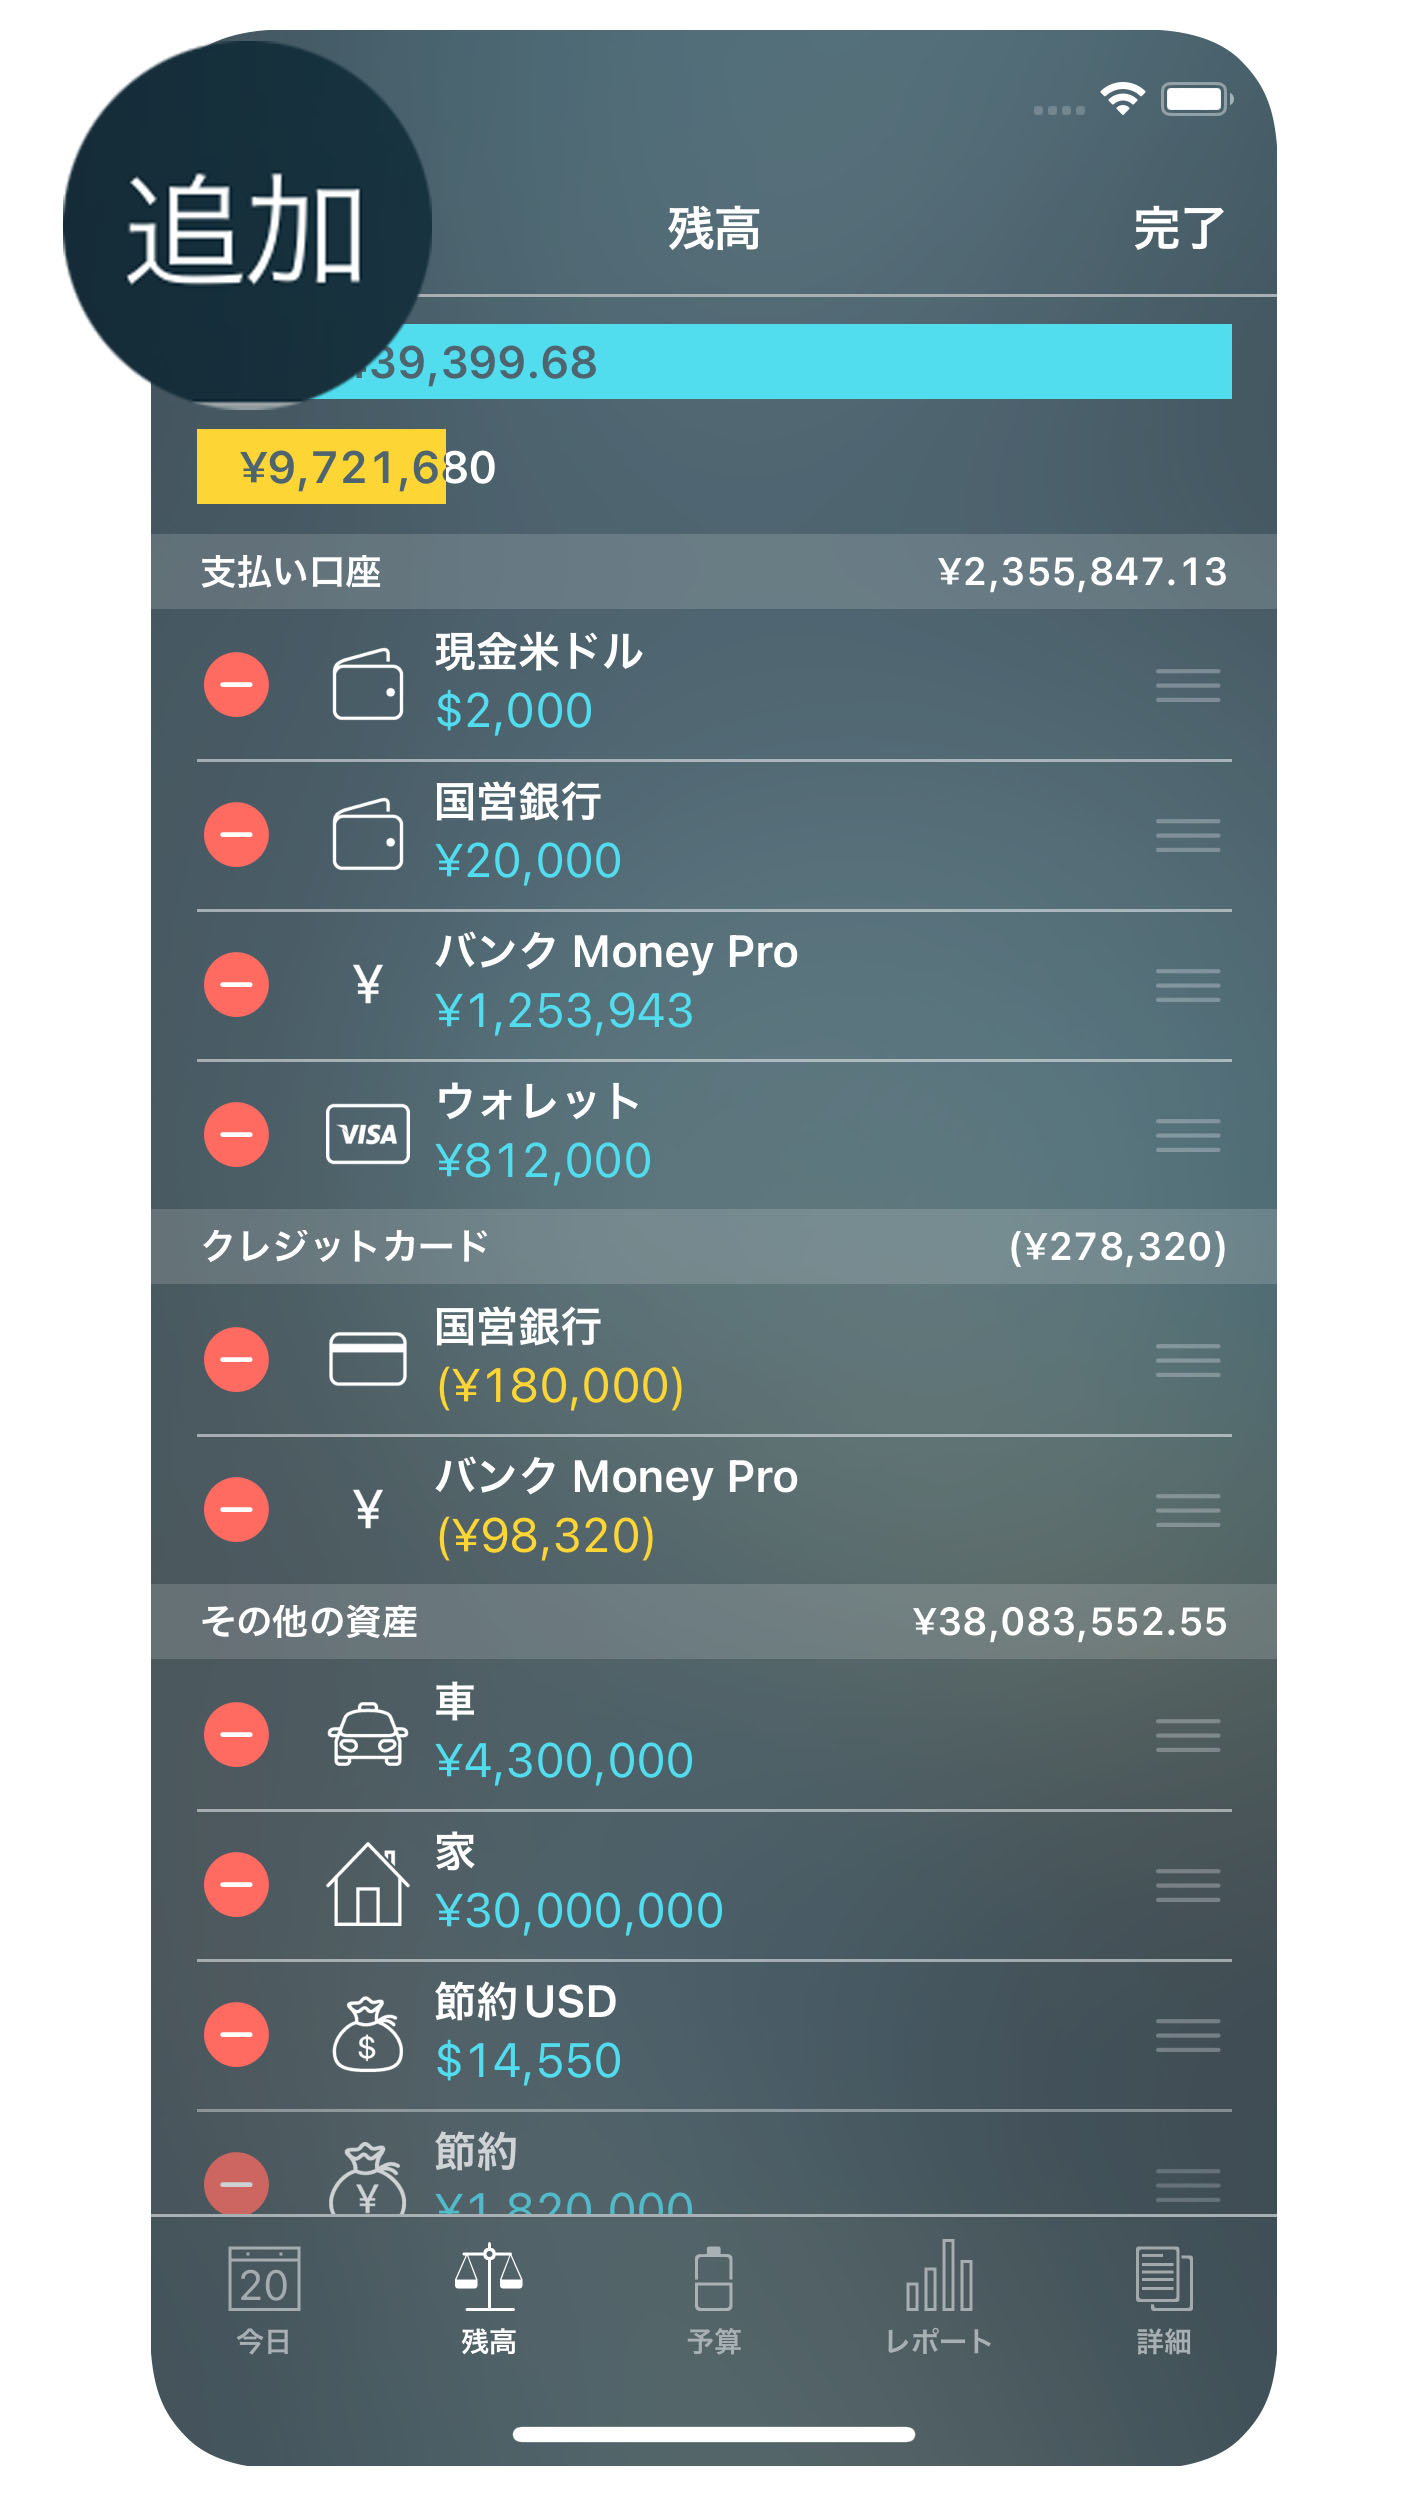 Money Pro - 勘定/ 口座（Accounts） - 追加 - iPhone